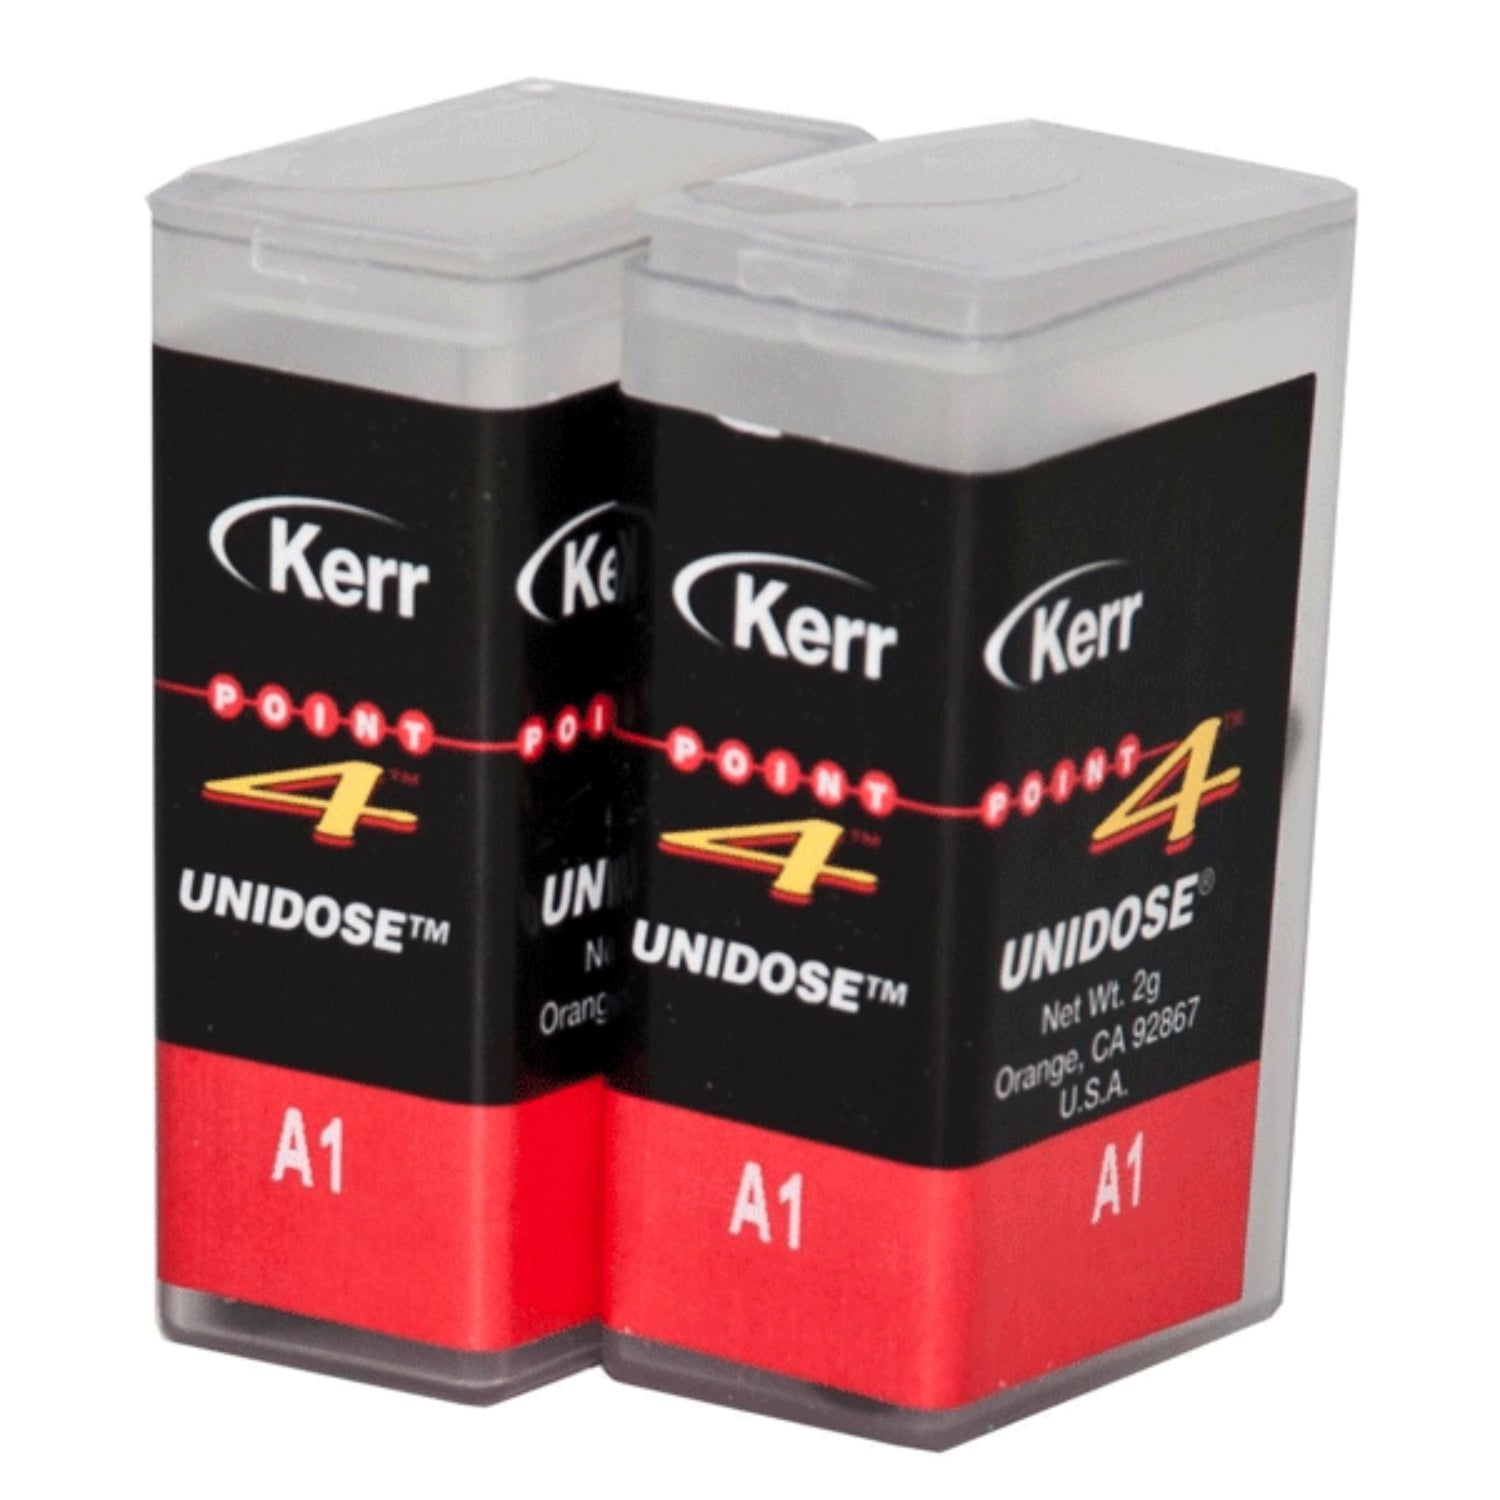 kerr-point-4-composite-unidose-restorative-composite-a1